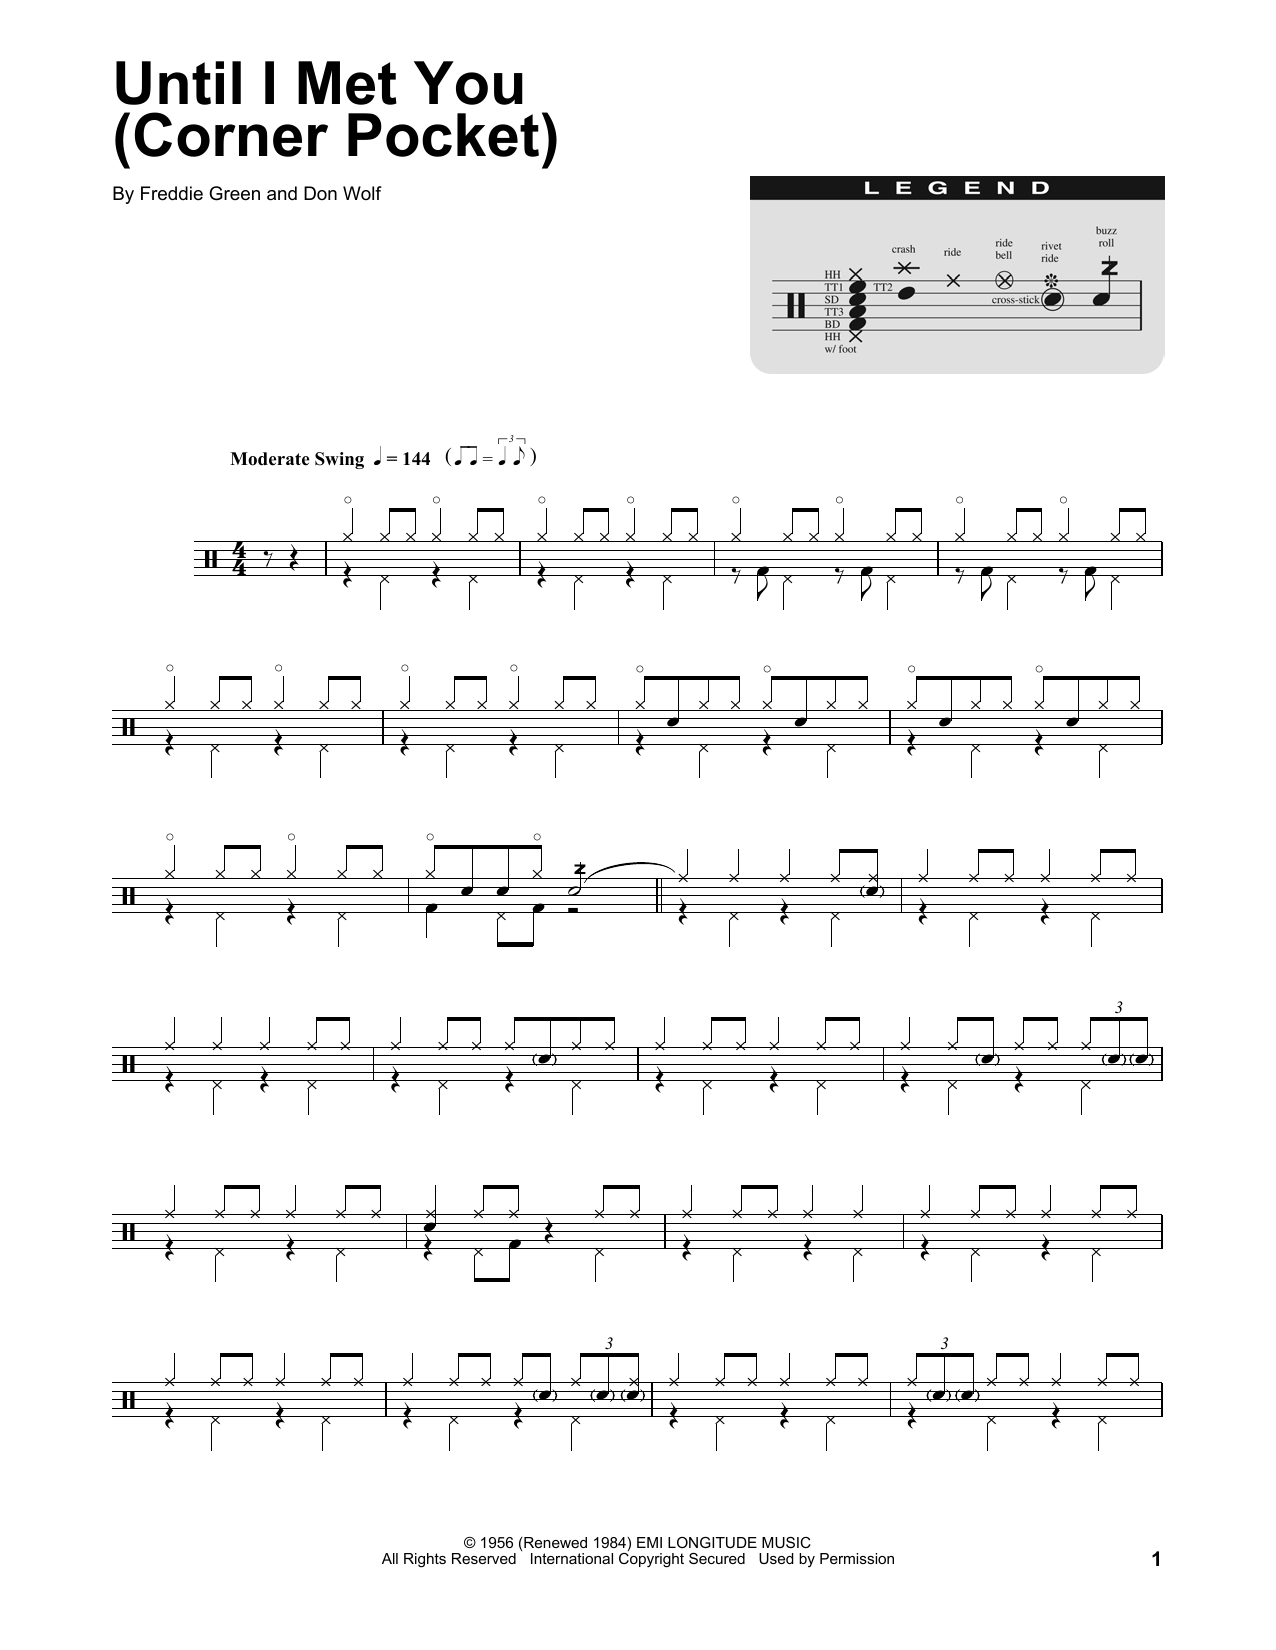 Manhattan Transfer Until I Met You (Corner Pocket) Sheet Music Notes & Chords for Drums Transcription - Download or Print PDF